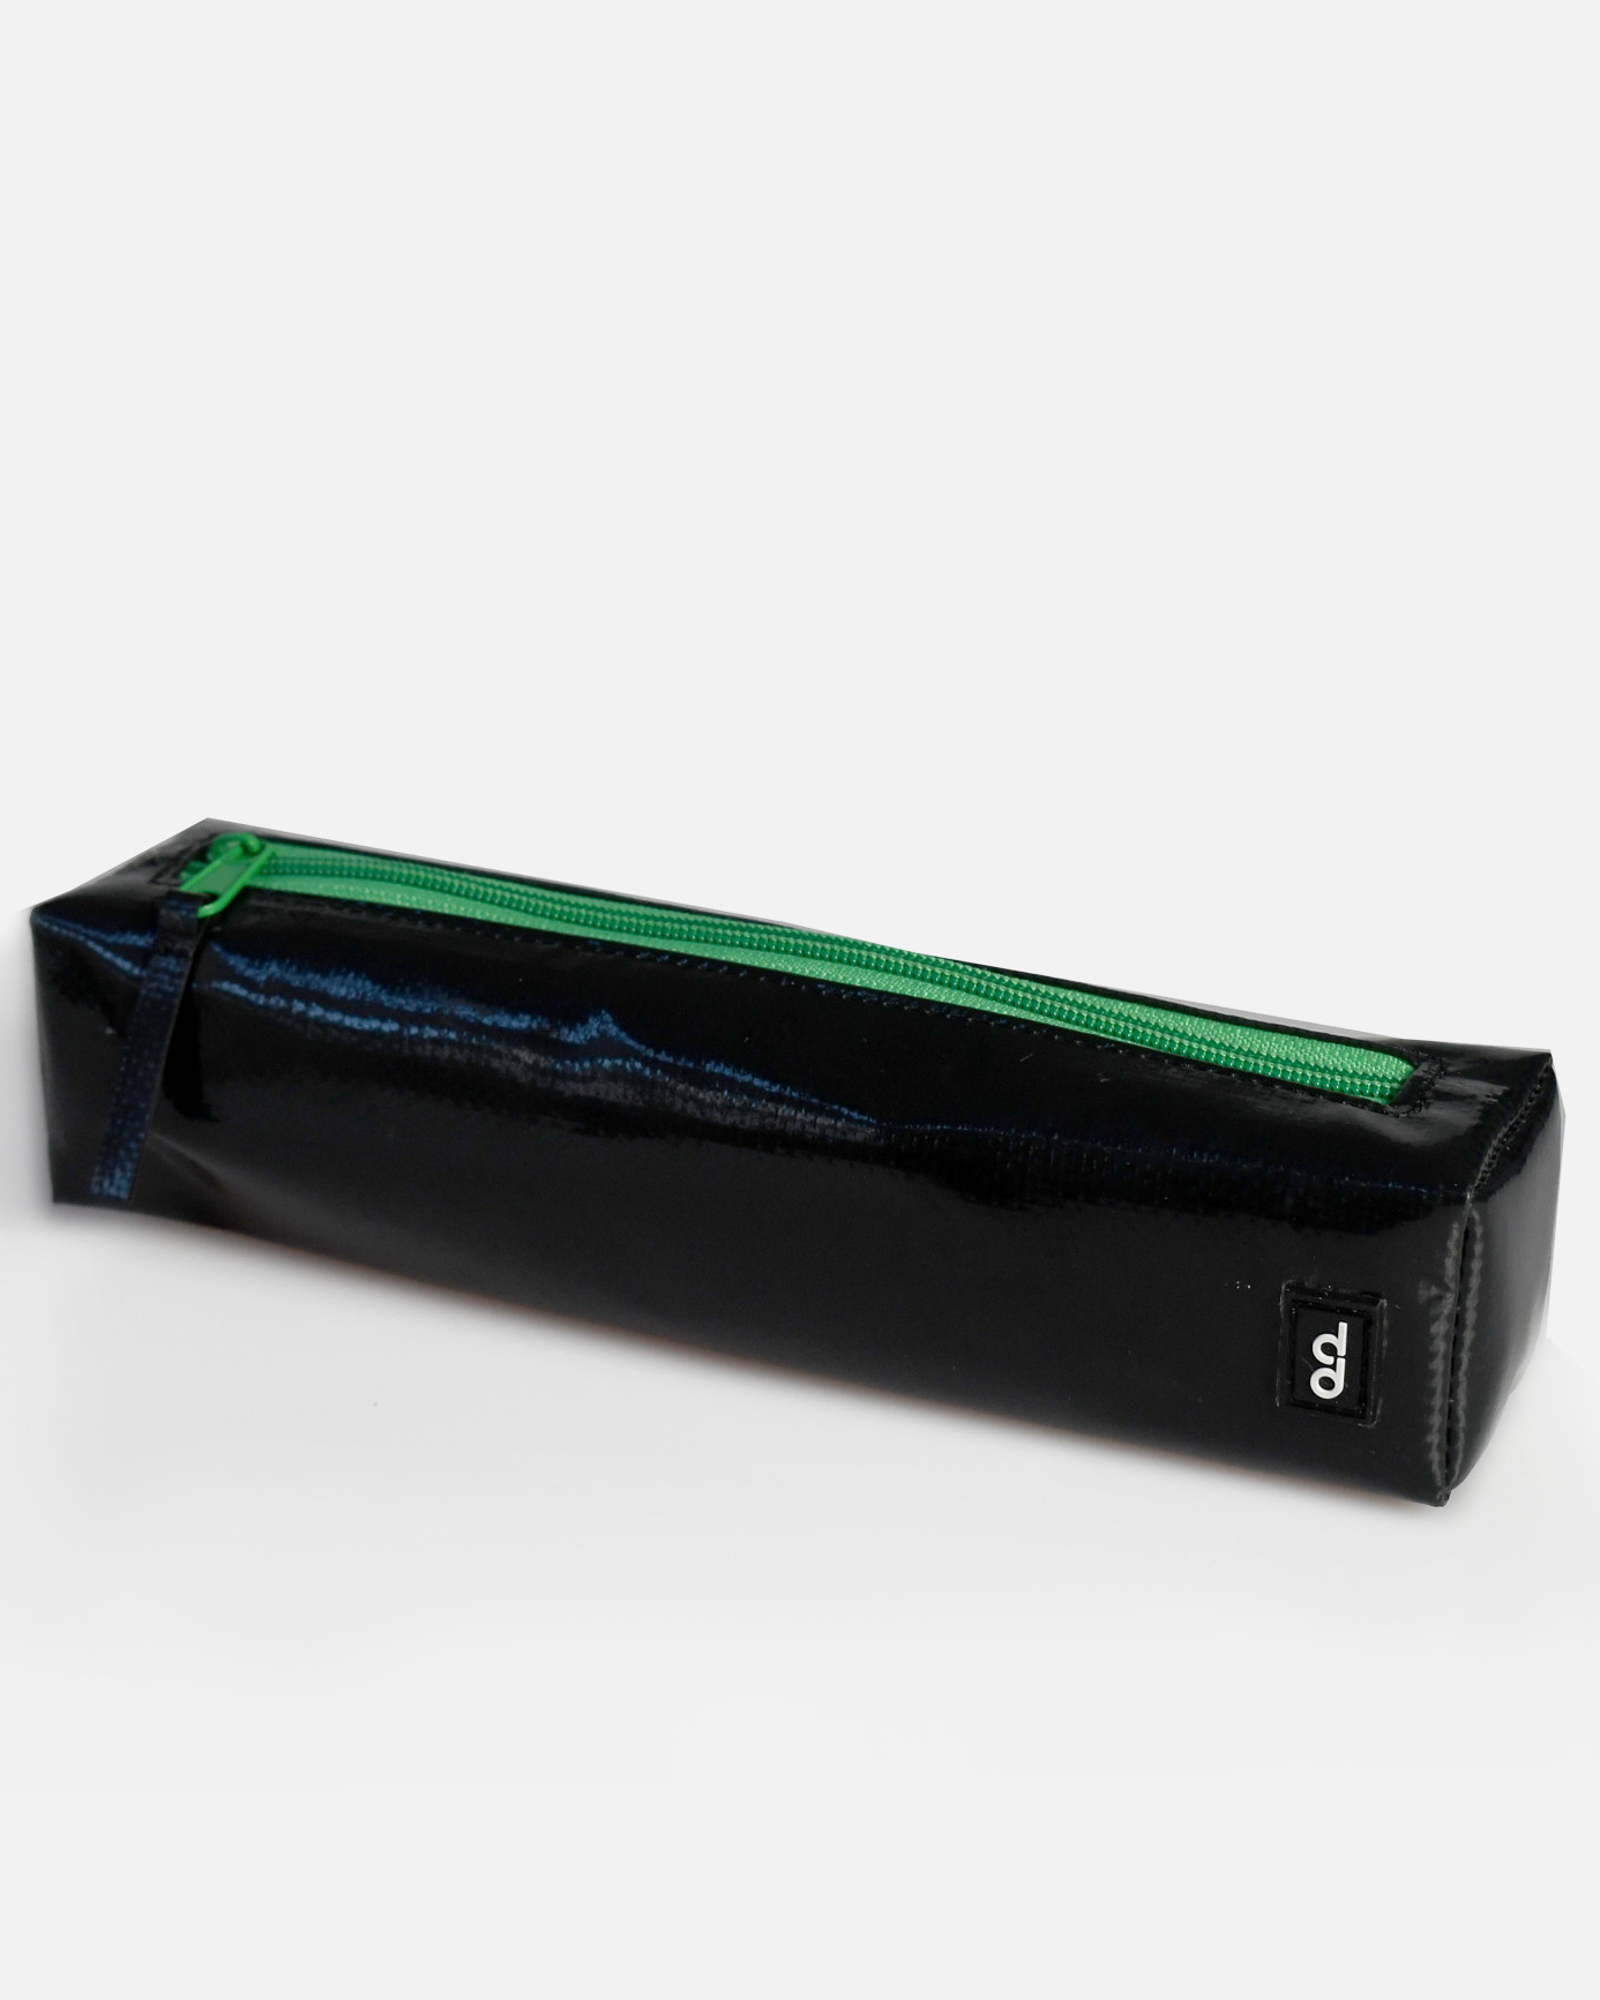  Used Tarp Black Pencil Case 01 - Hộp Đựng Bút Chì Đen 01 